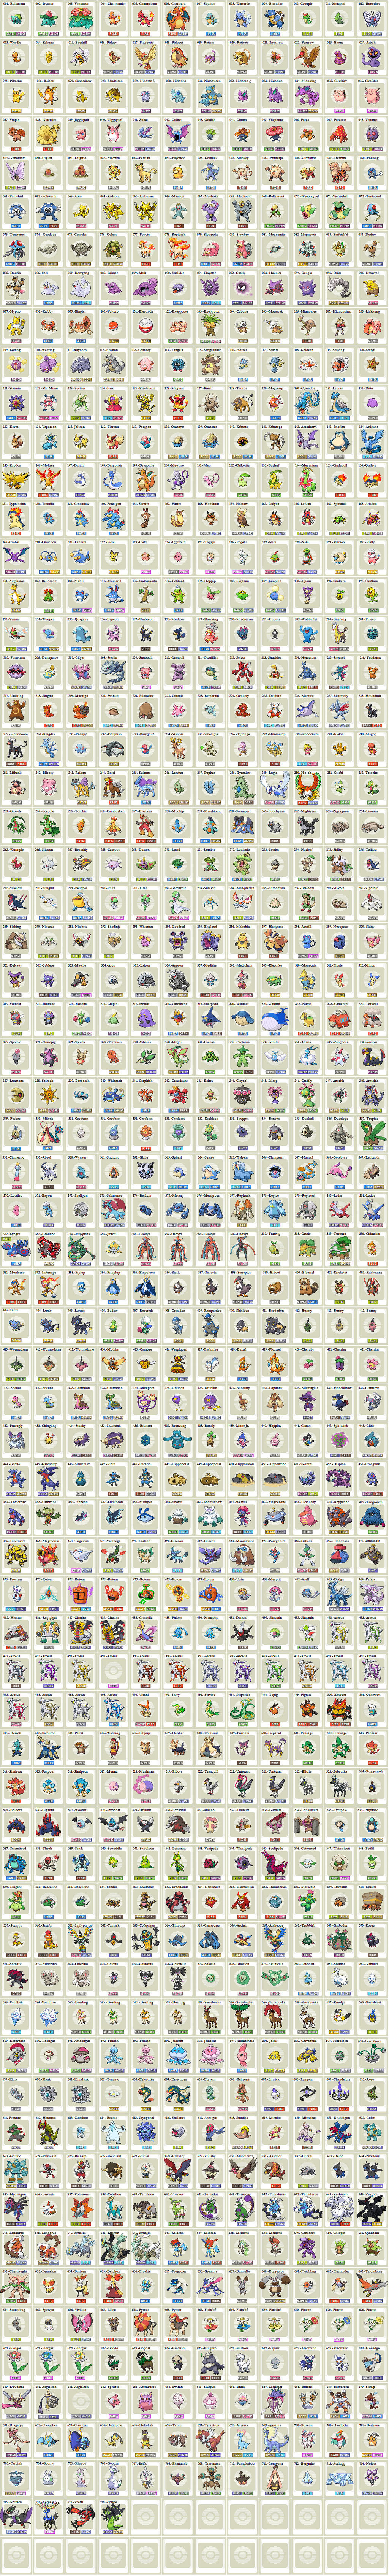 Todos os Pokemons by IuridomSouza on DeviantArt